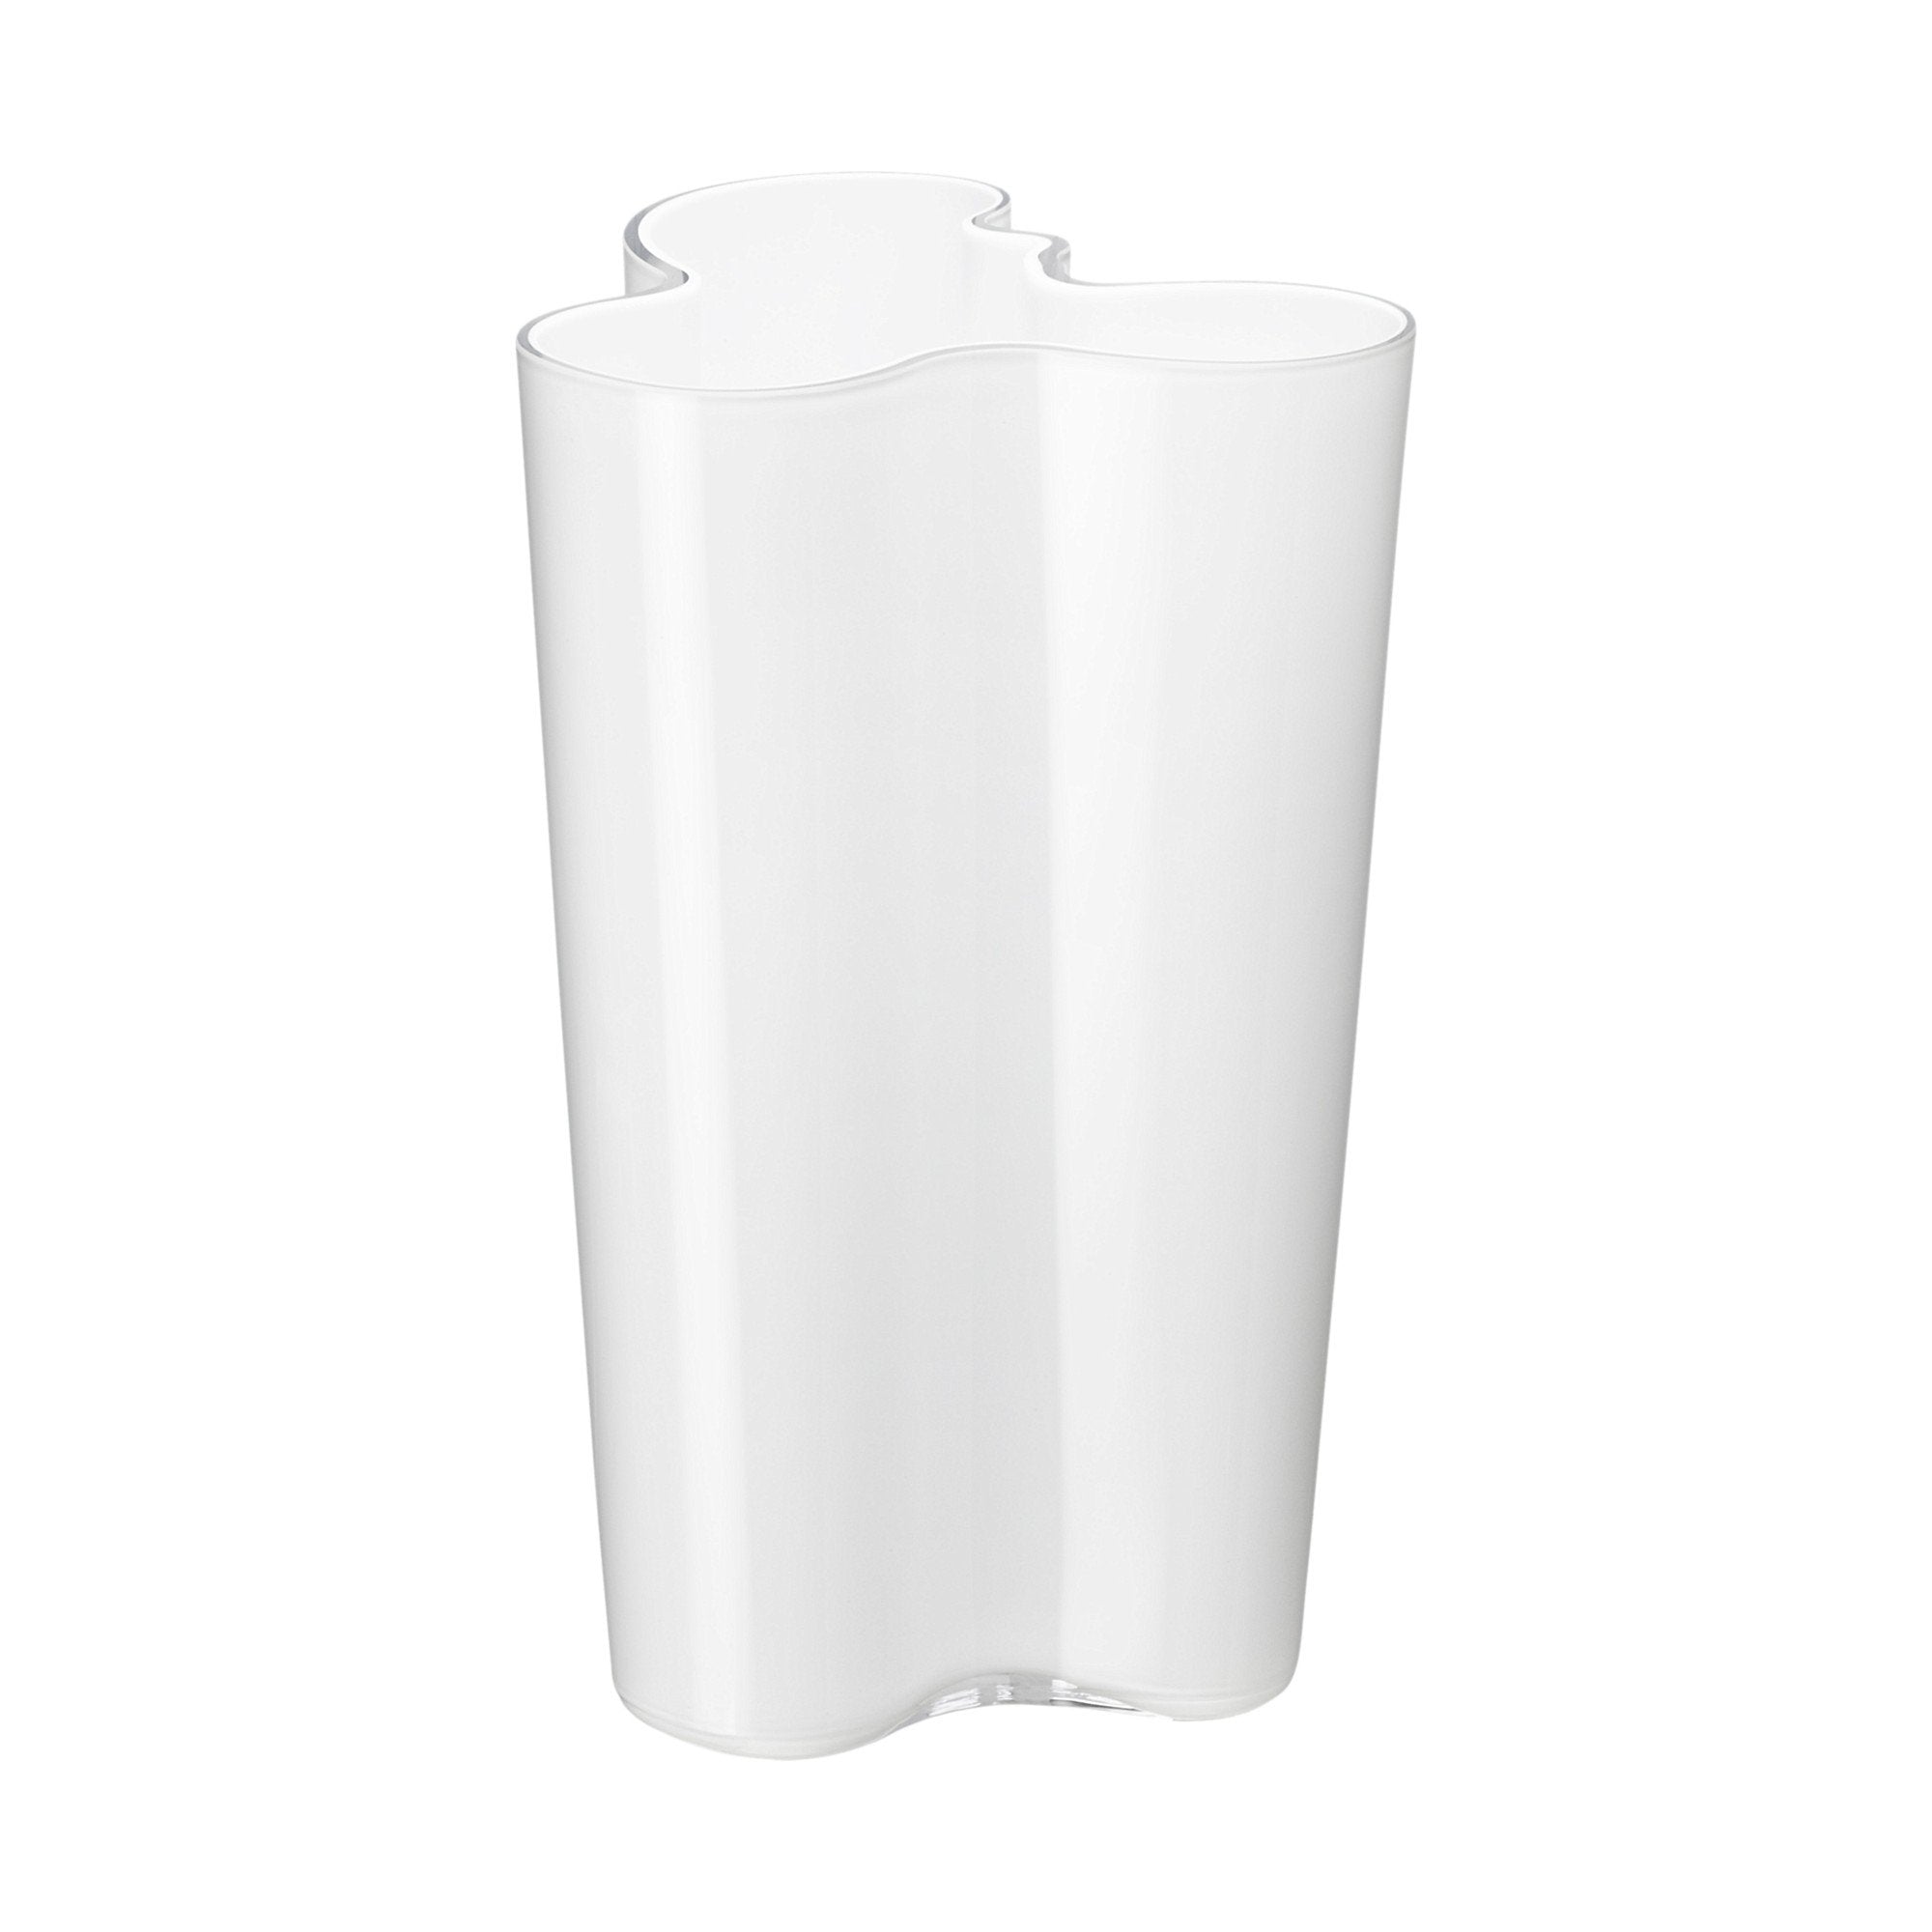 Iittala alvar aalto vase blanc, 25,1cm